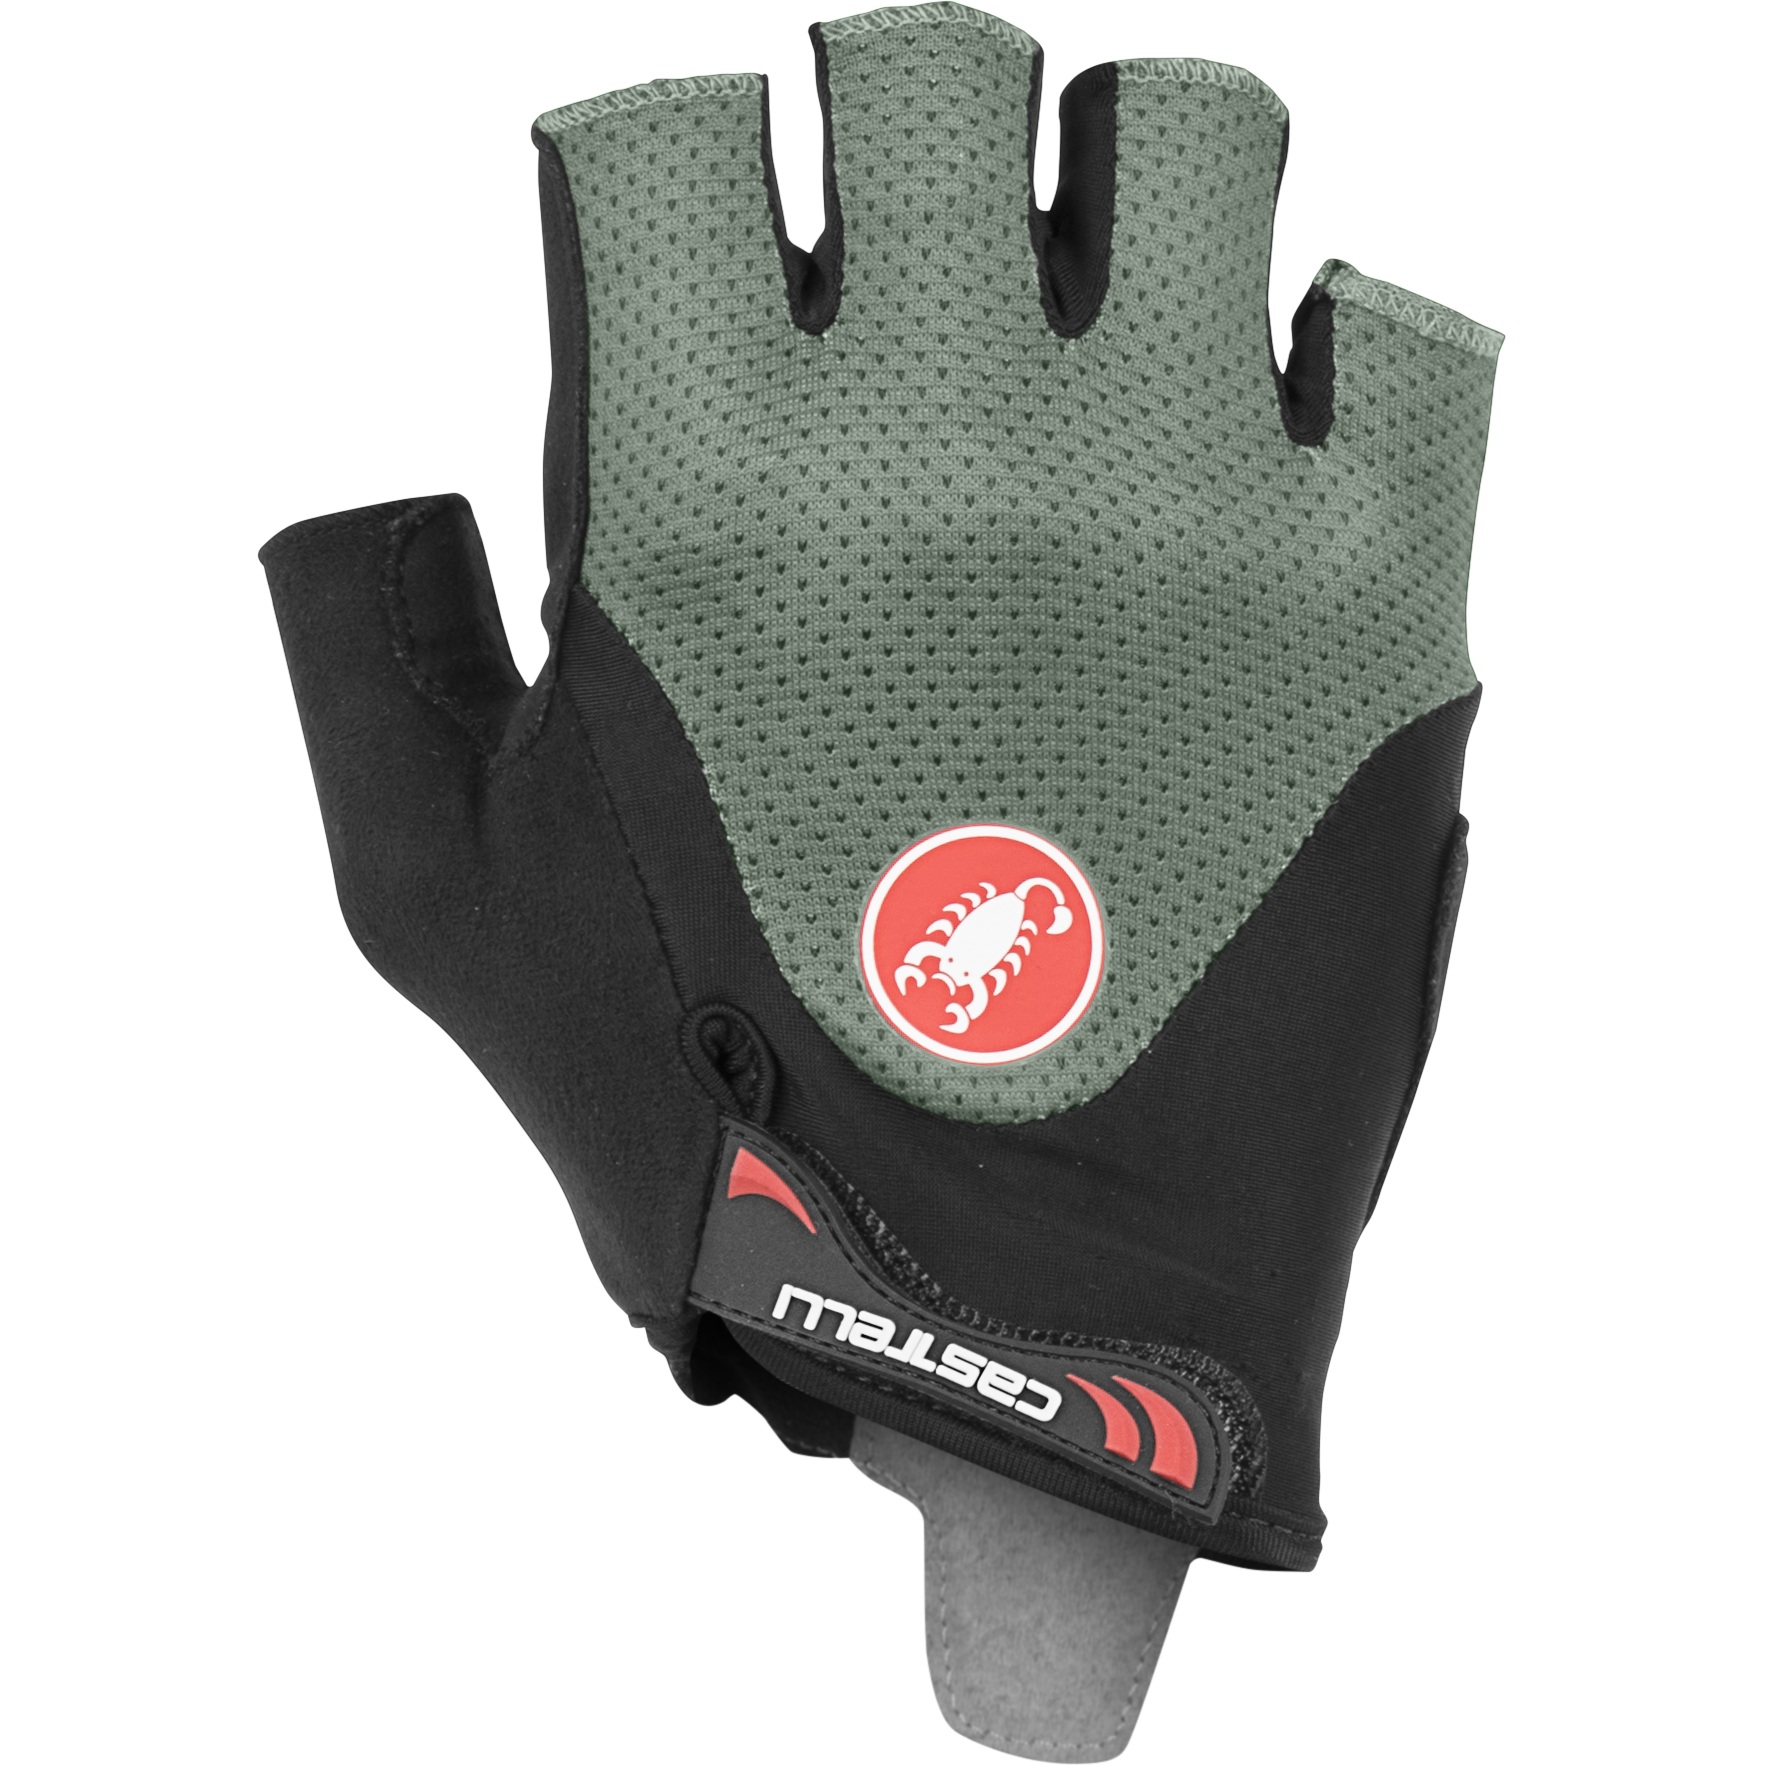 Produktbild von Castelli Arenberg Gel 2 Kurzfinger-Handschuhe - defender green 346